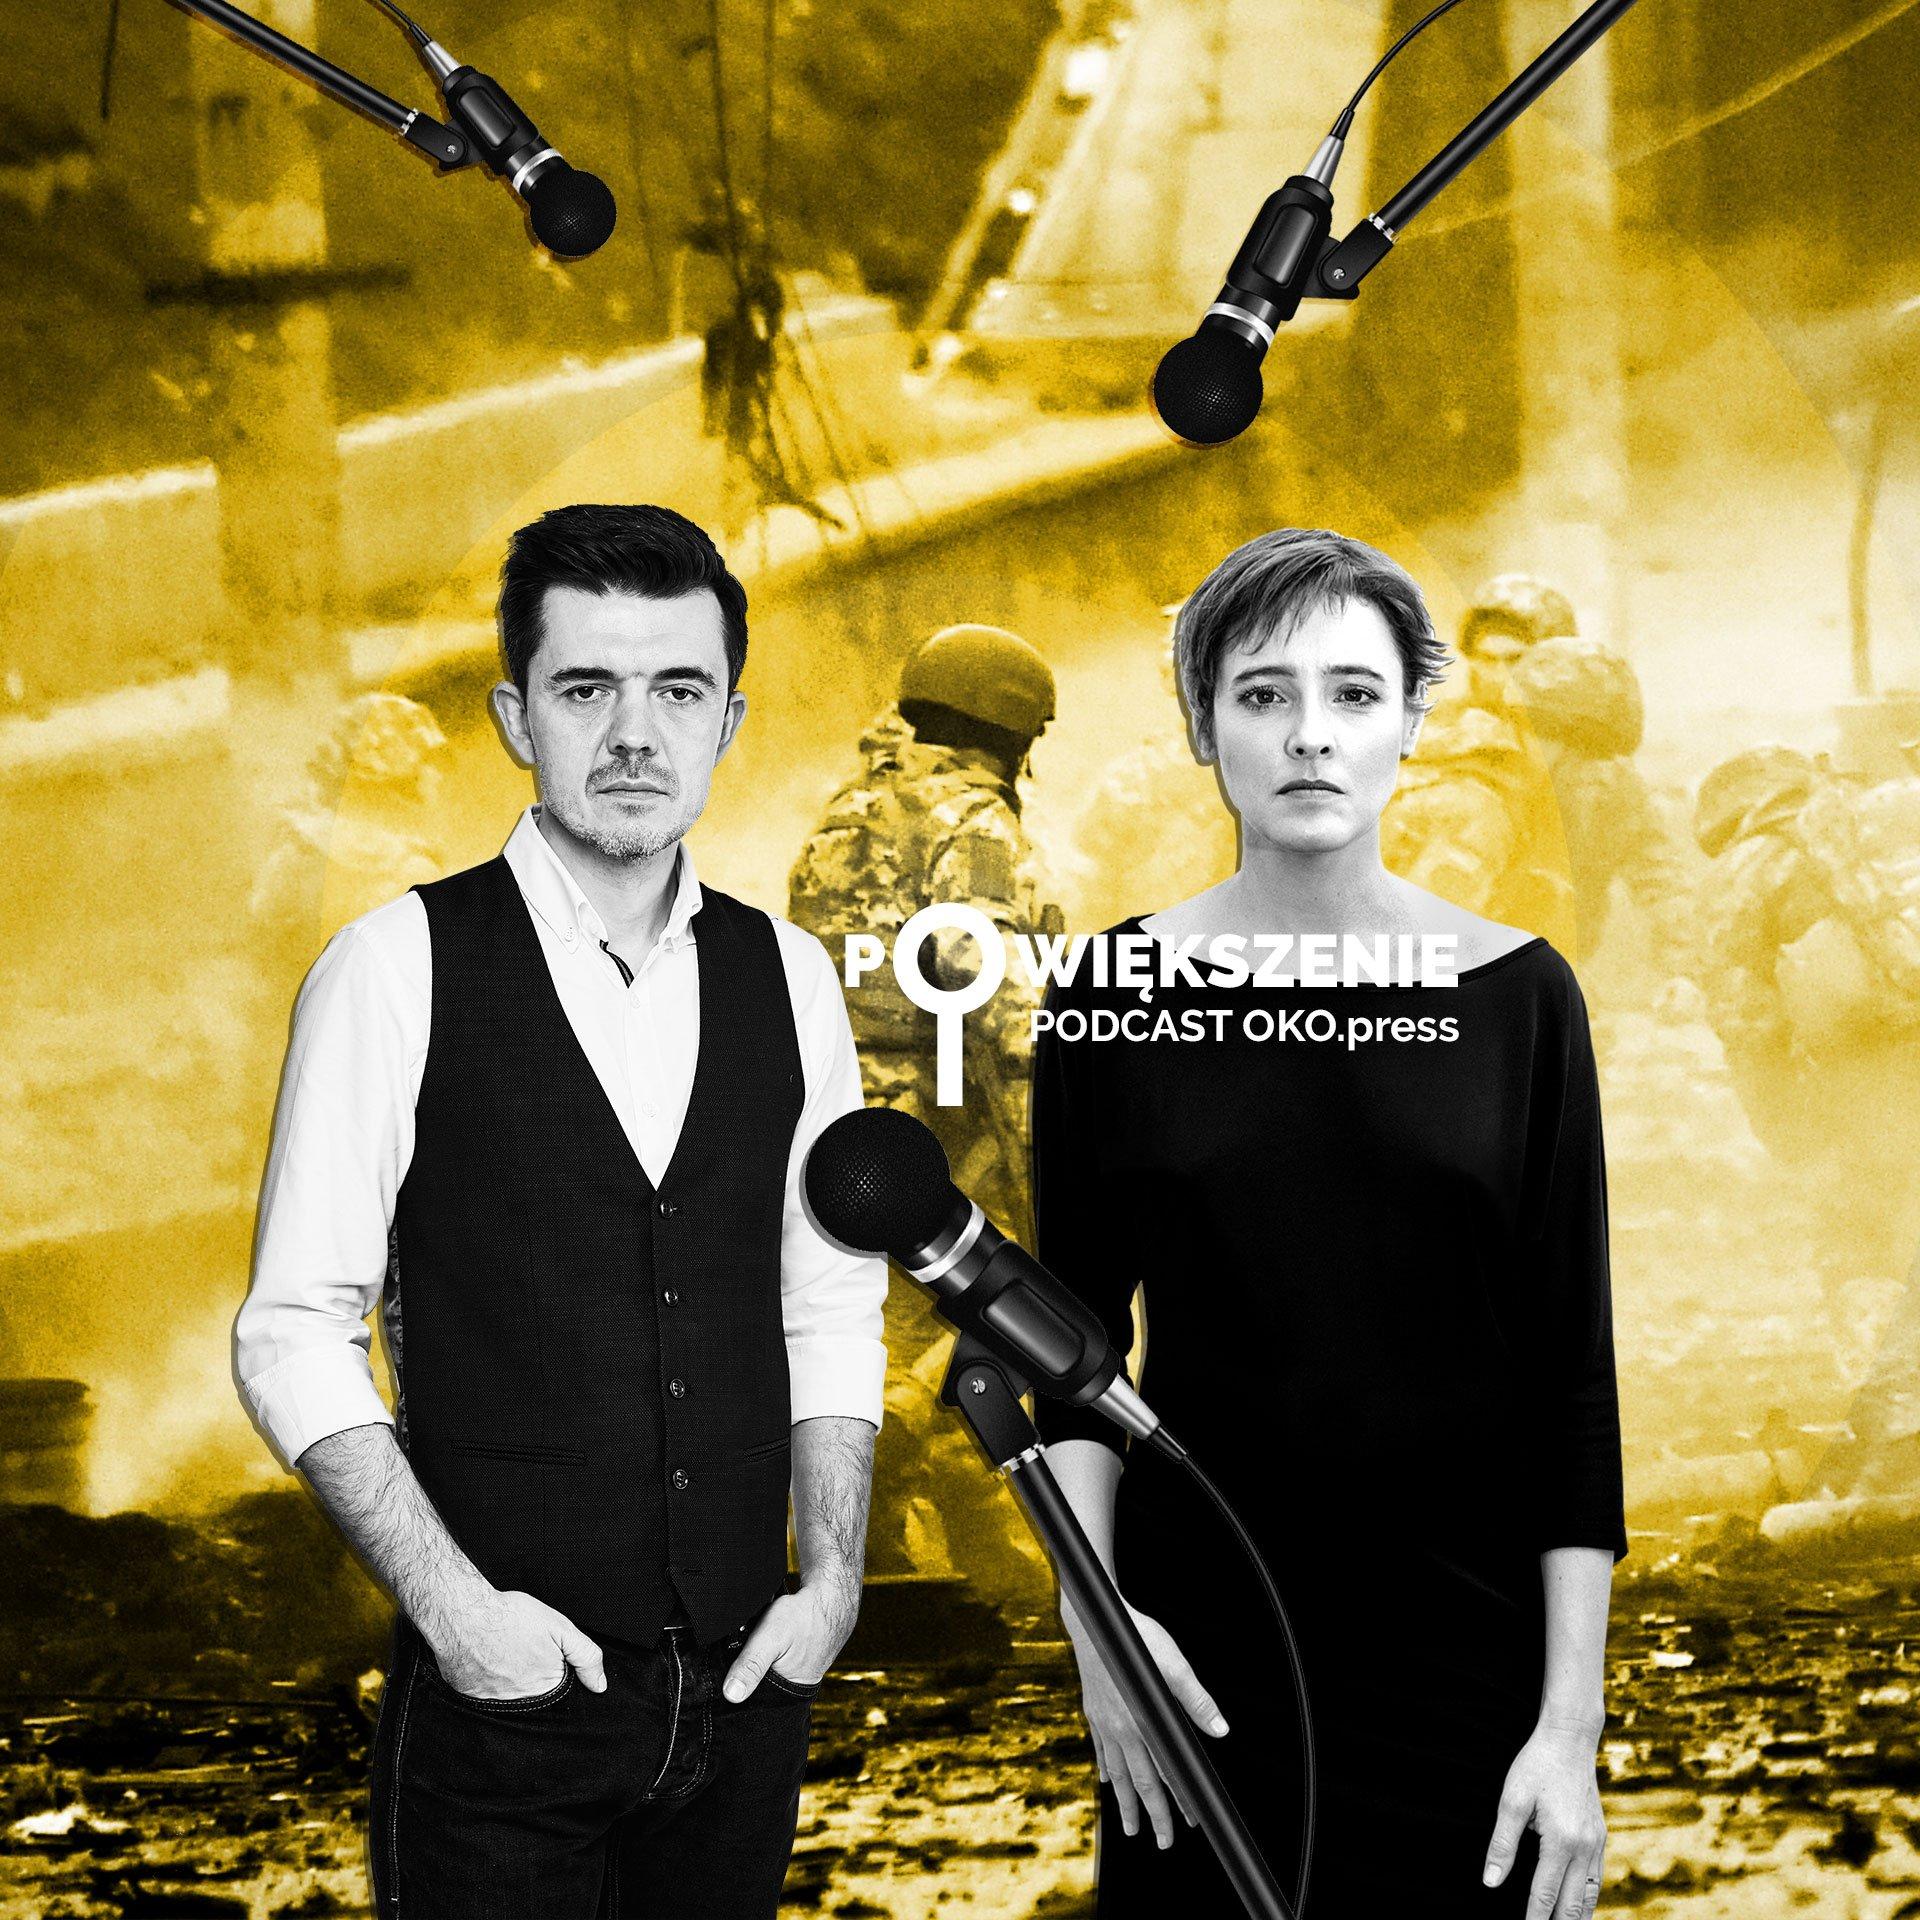 Powiększenie - podcast OKO.press - wojna w Ukrainie